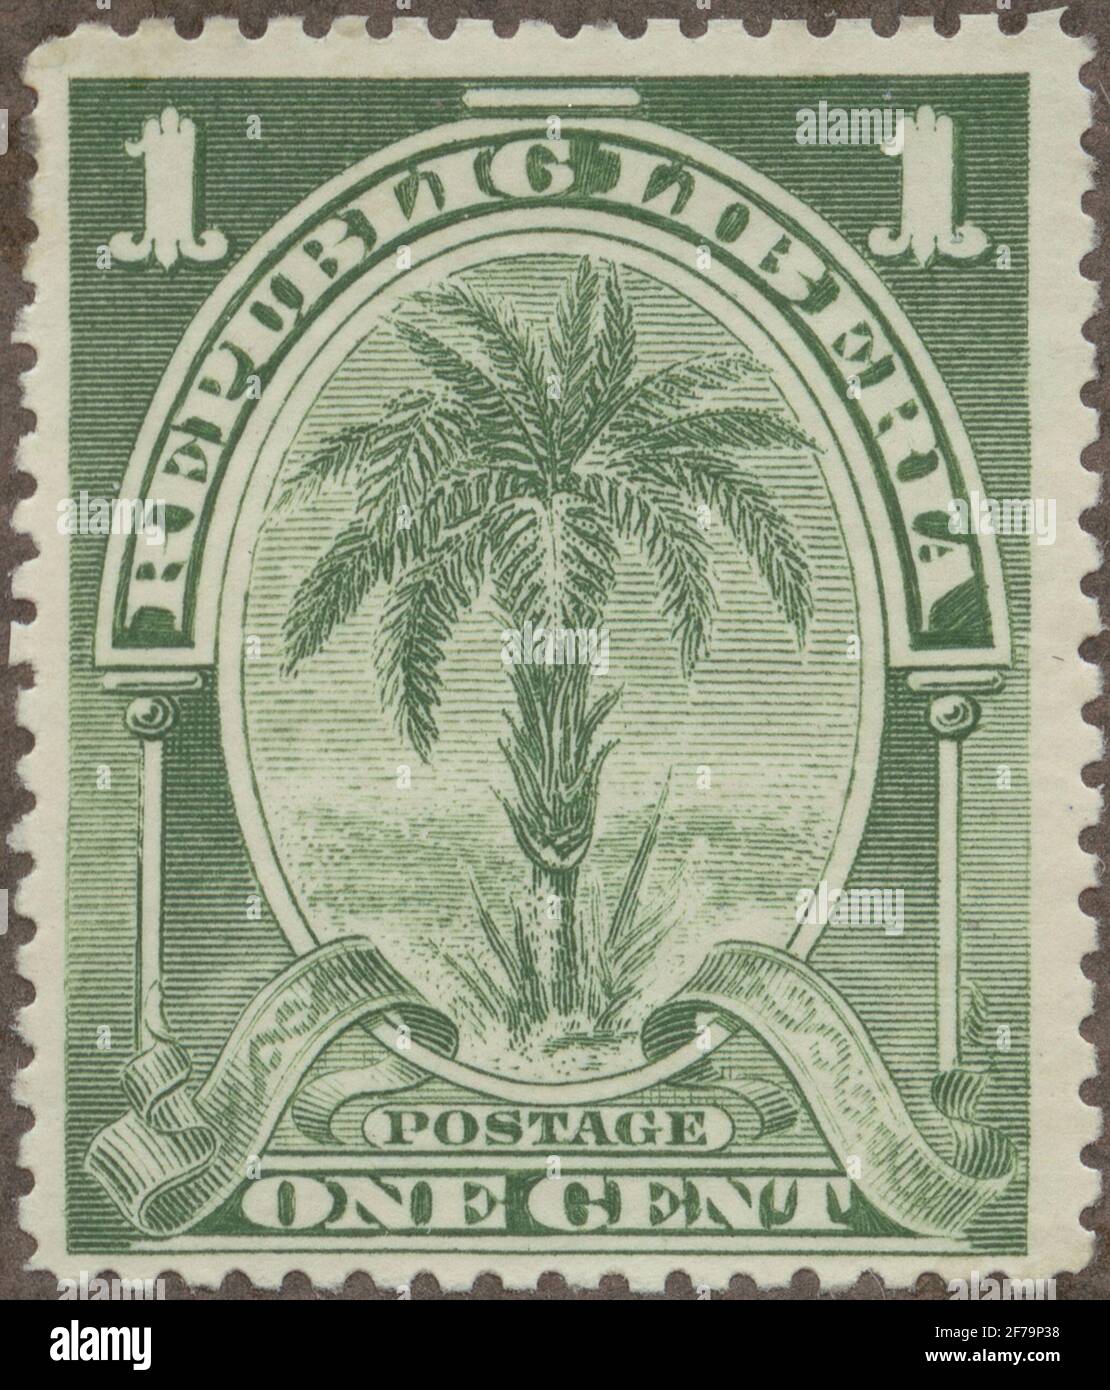 Timbre du poste de philatéliste de Gösta Bodman, commencé en 1950.le timbre du Libéria, 1900. Motions de DadelPalm. Banque D'Images